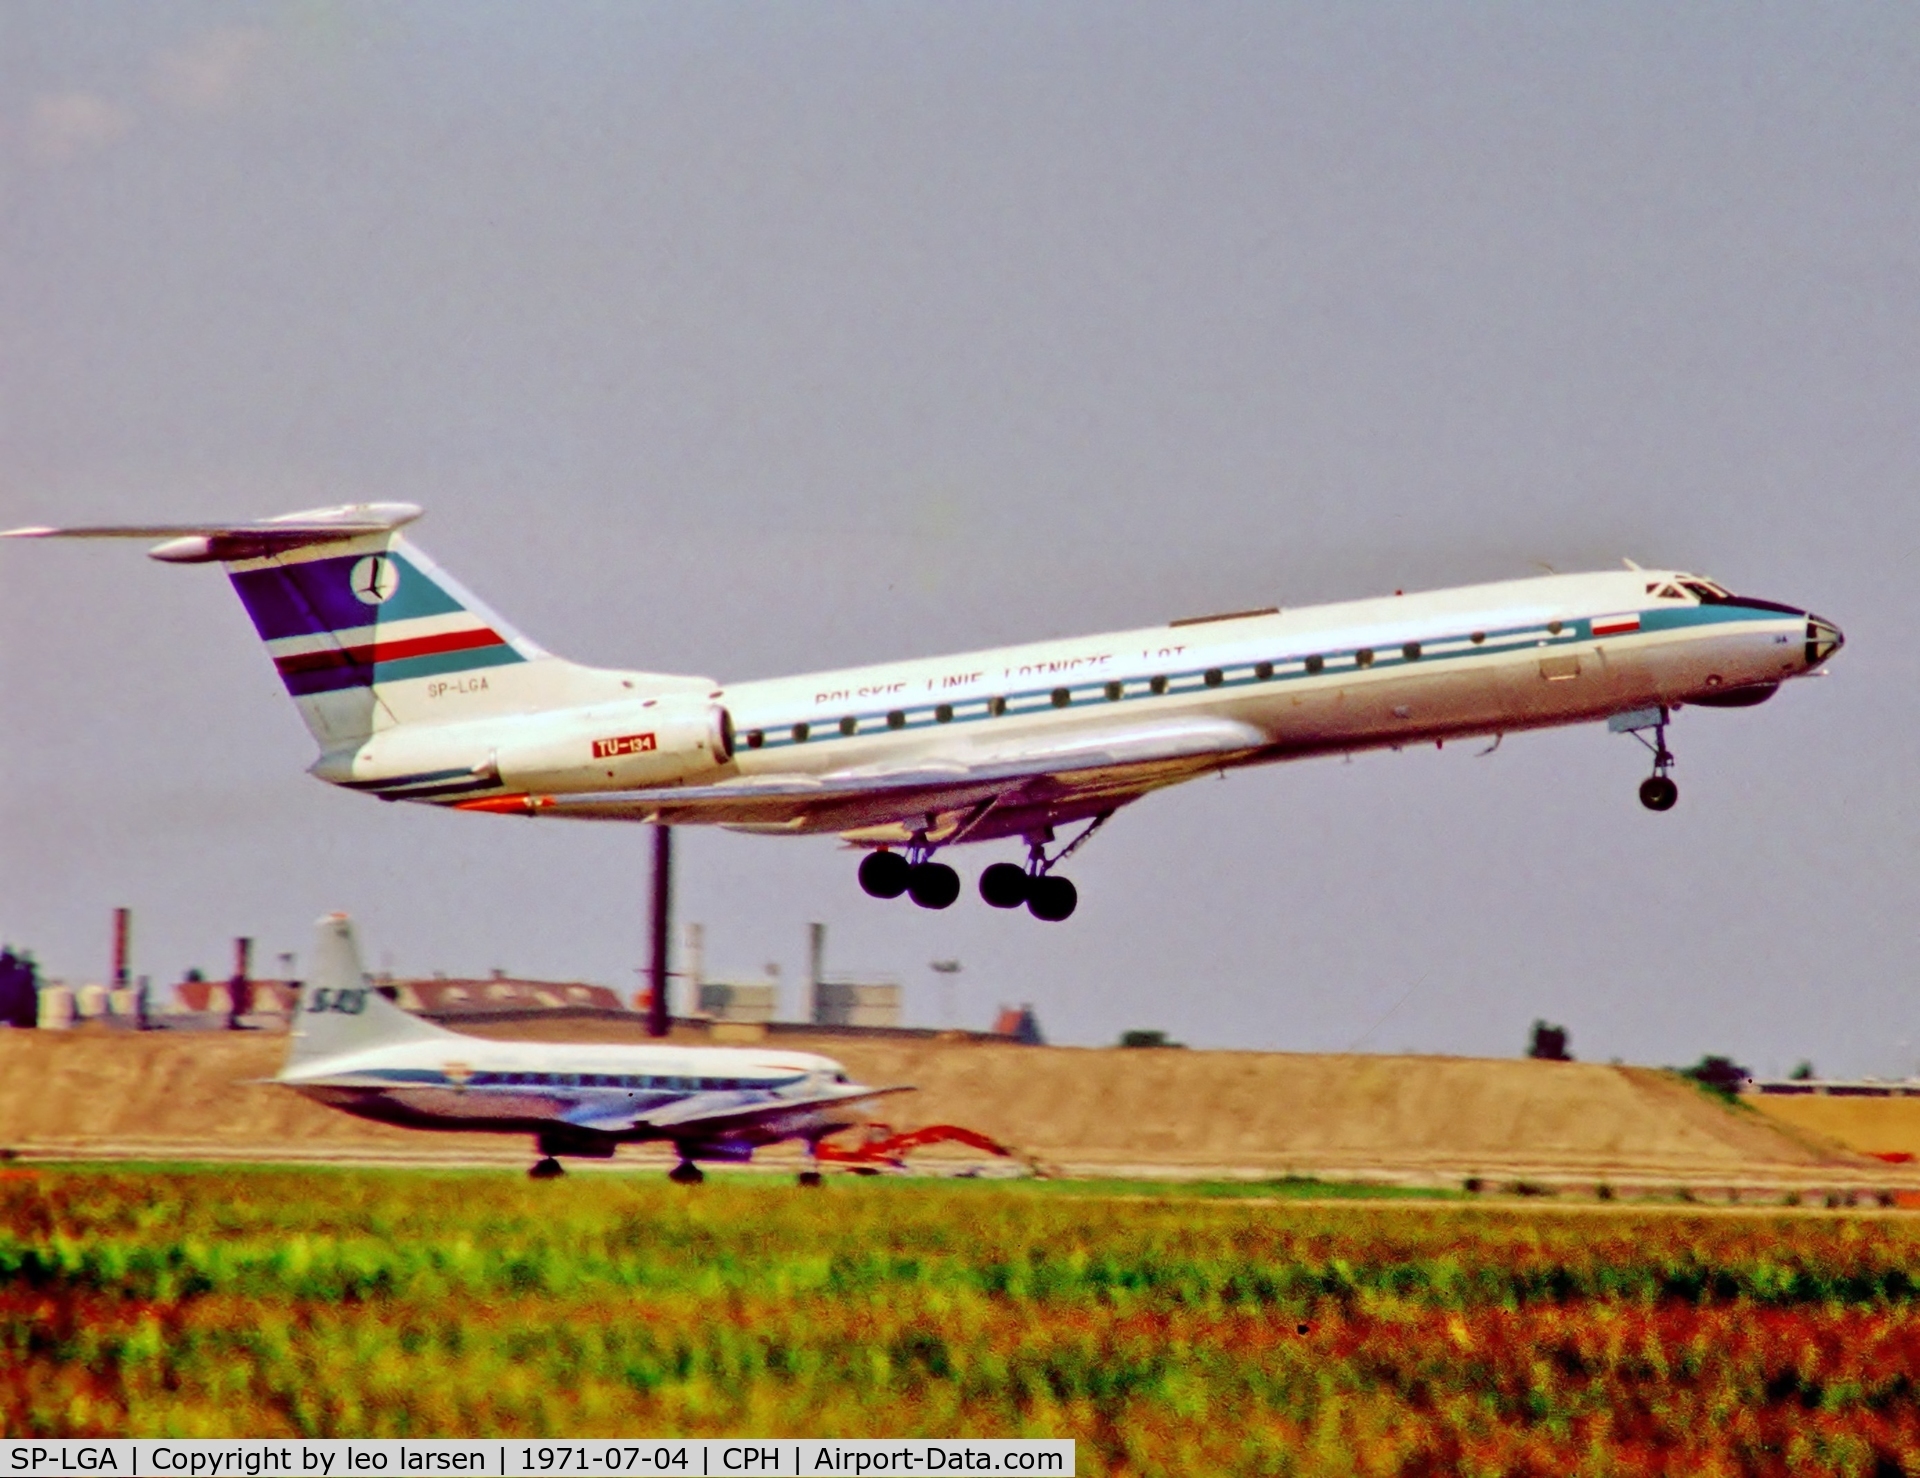 SP-LGA, 1968 Tupolev Tu-134 C/N 8350602, Copenhagen 4.7.1971